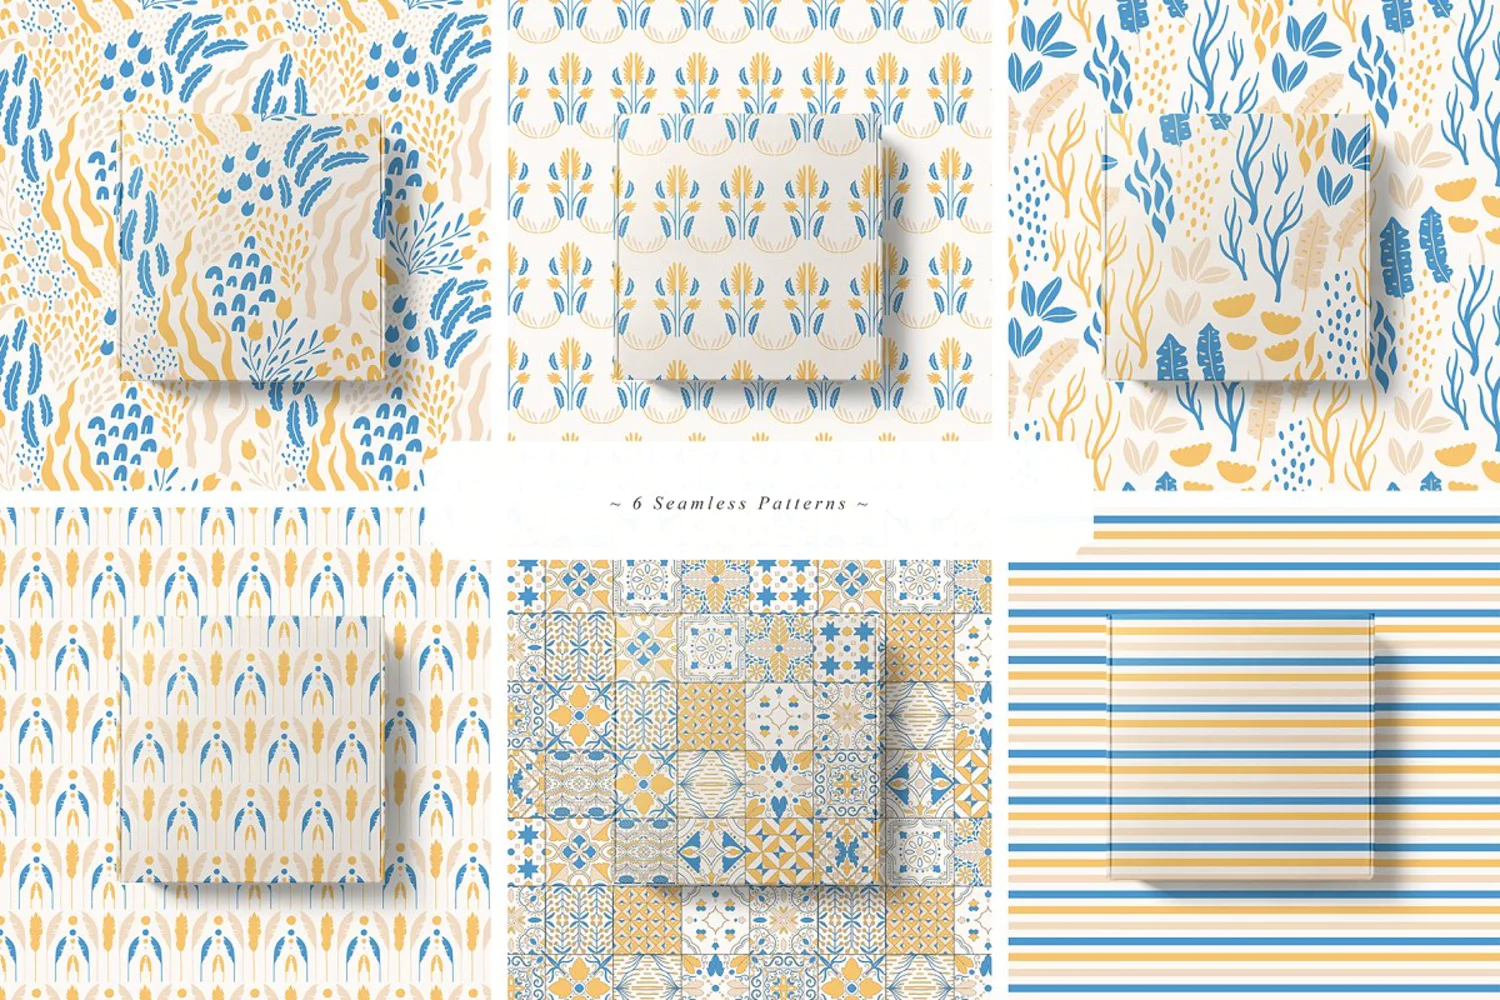 5326 热带国家的民间艺术装饰瓷砖图案矢量插画素材-South Dream Collection Tiles Ornament Patterns@GOOODME.COM